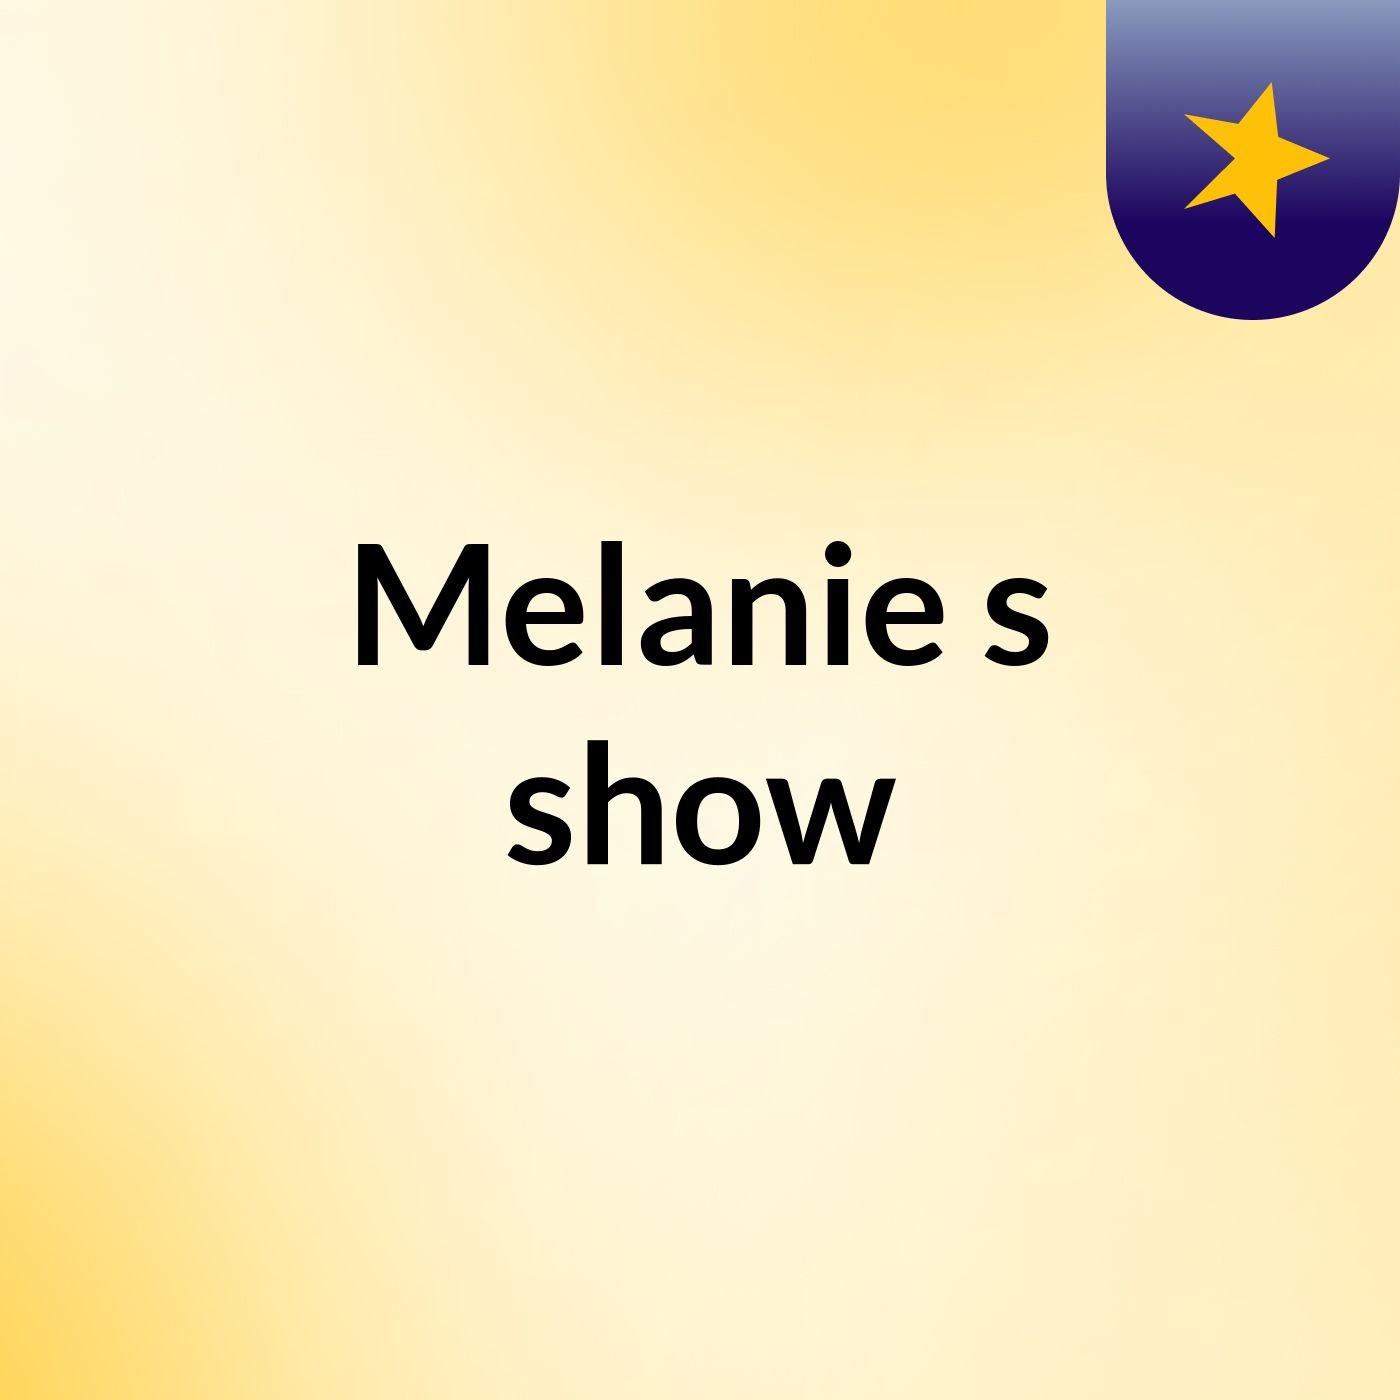 Melanie's show